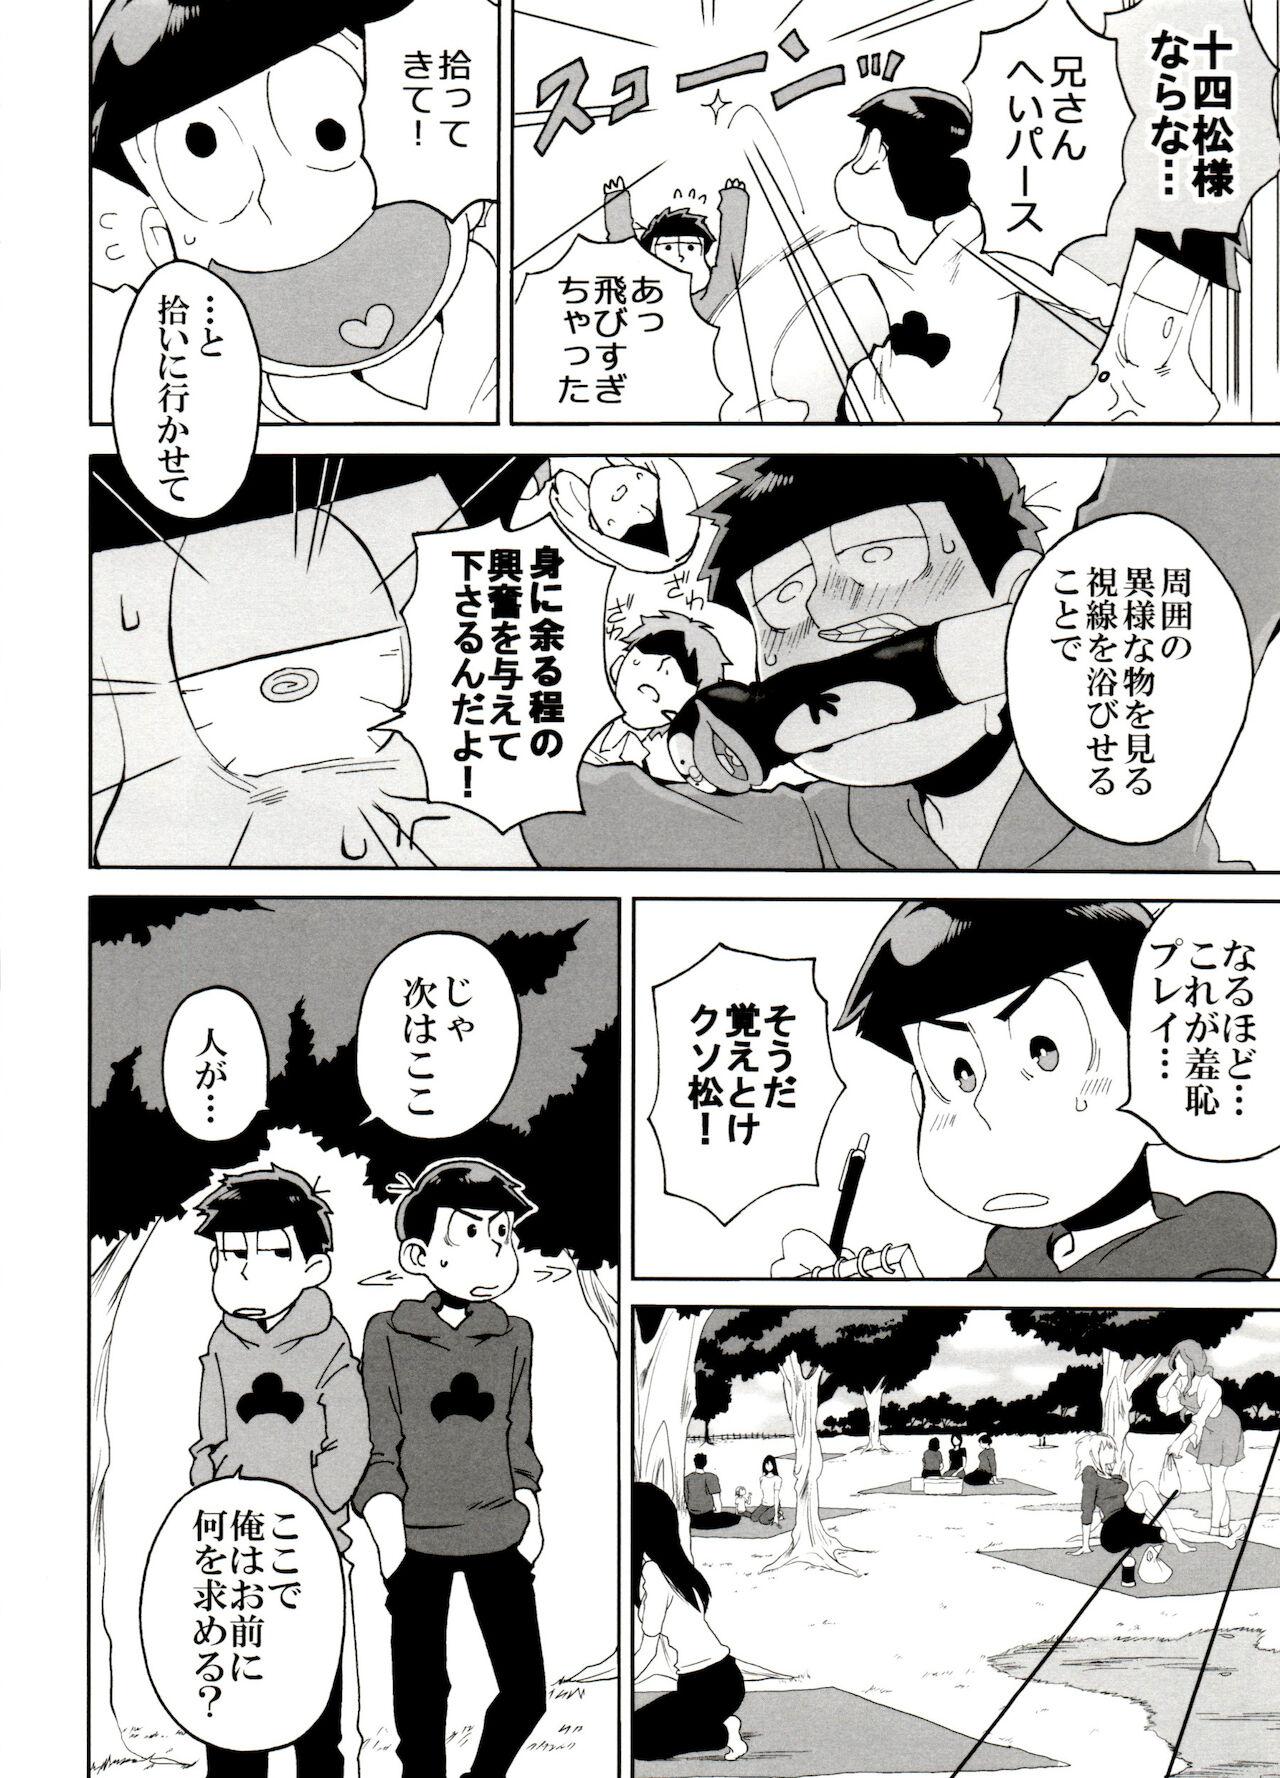 Hung SM Matsu 2 - Osomatsu san Banging - Page 8